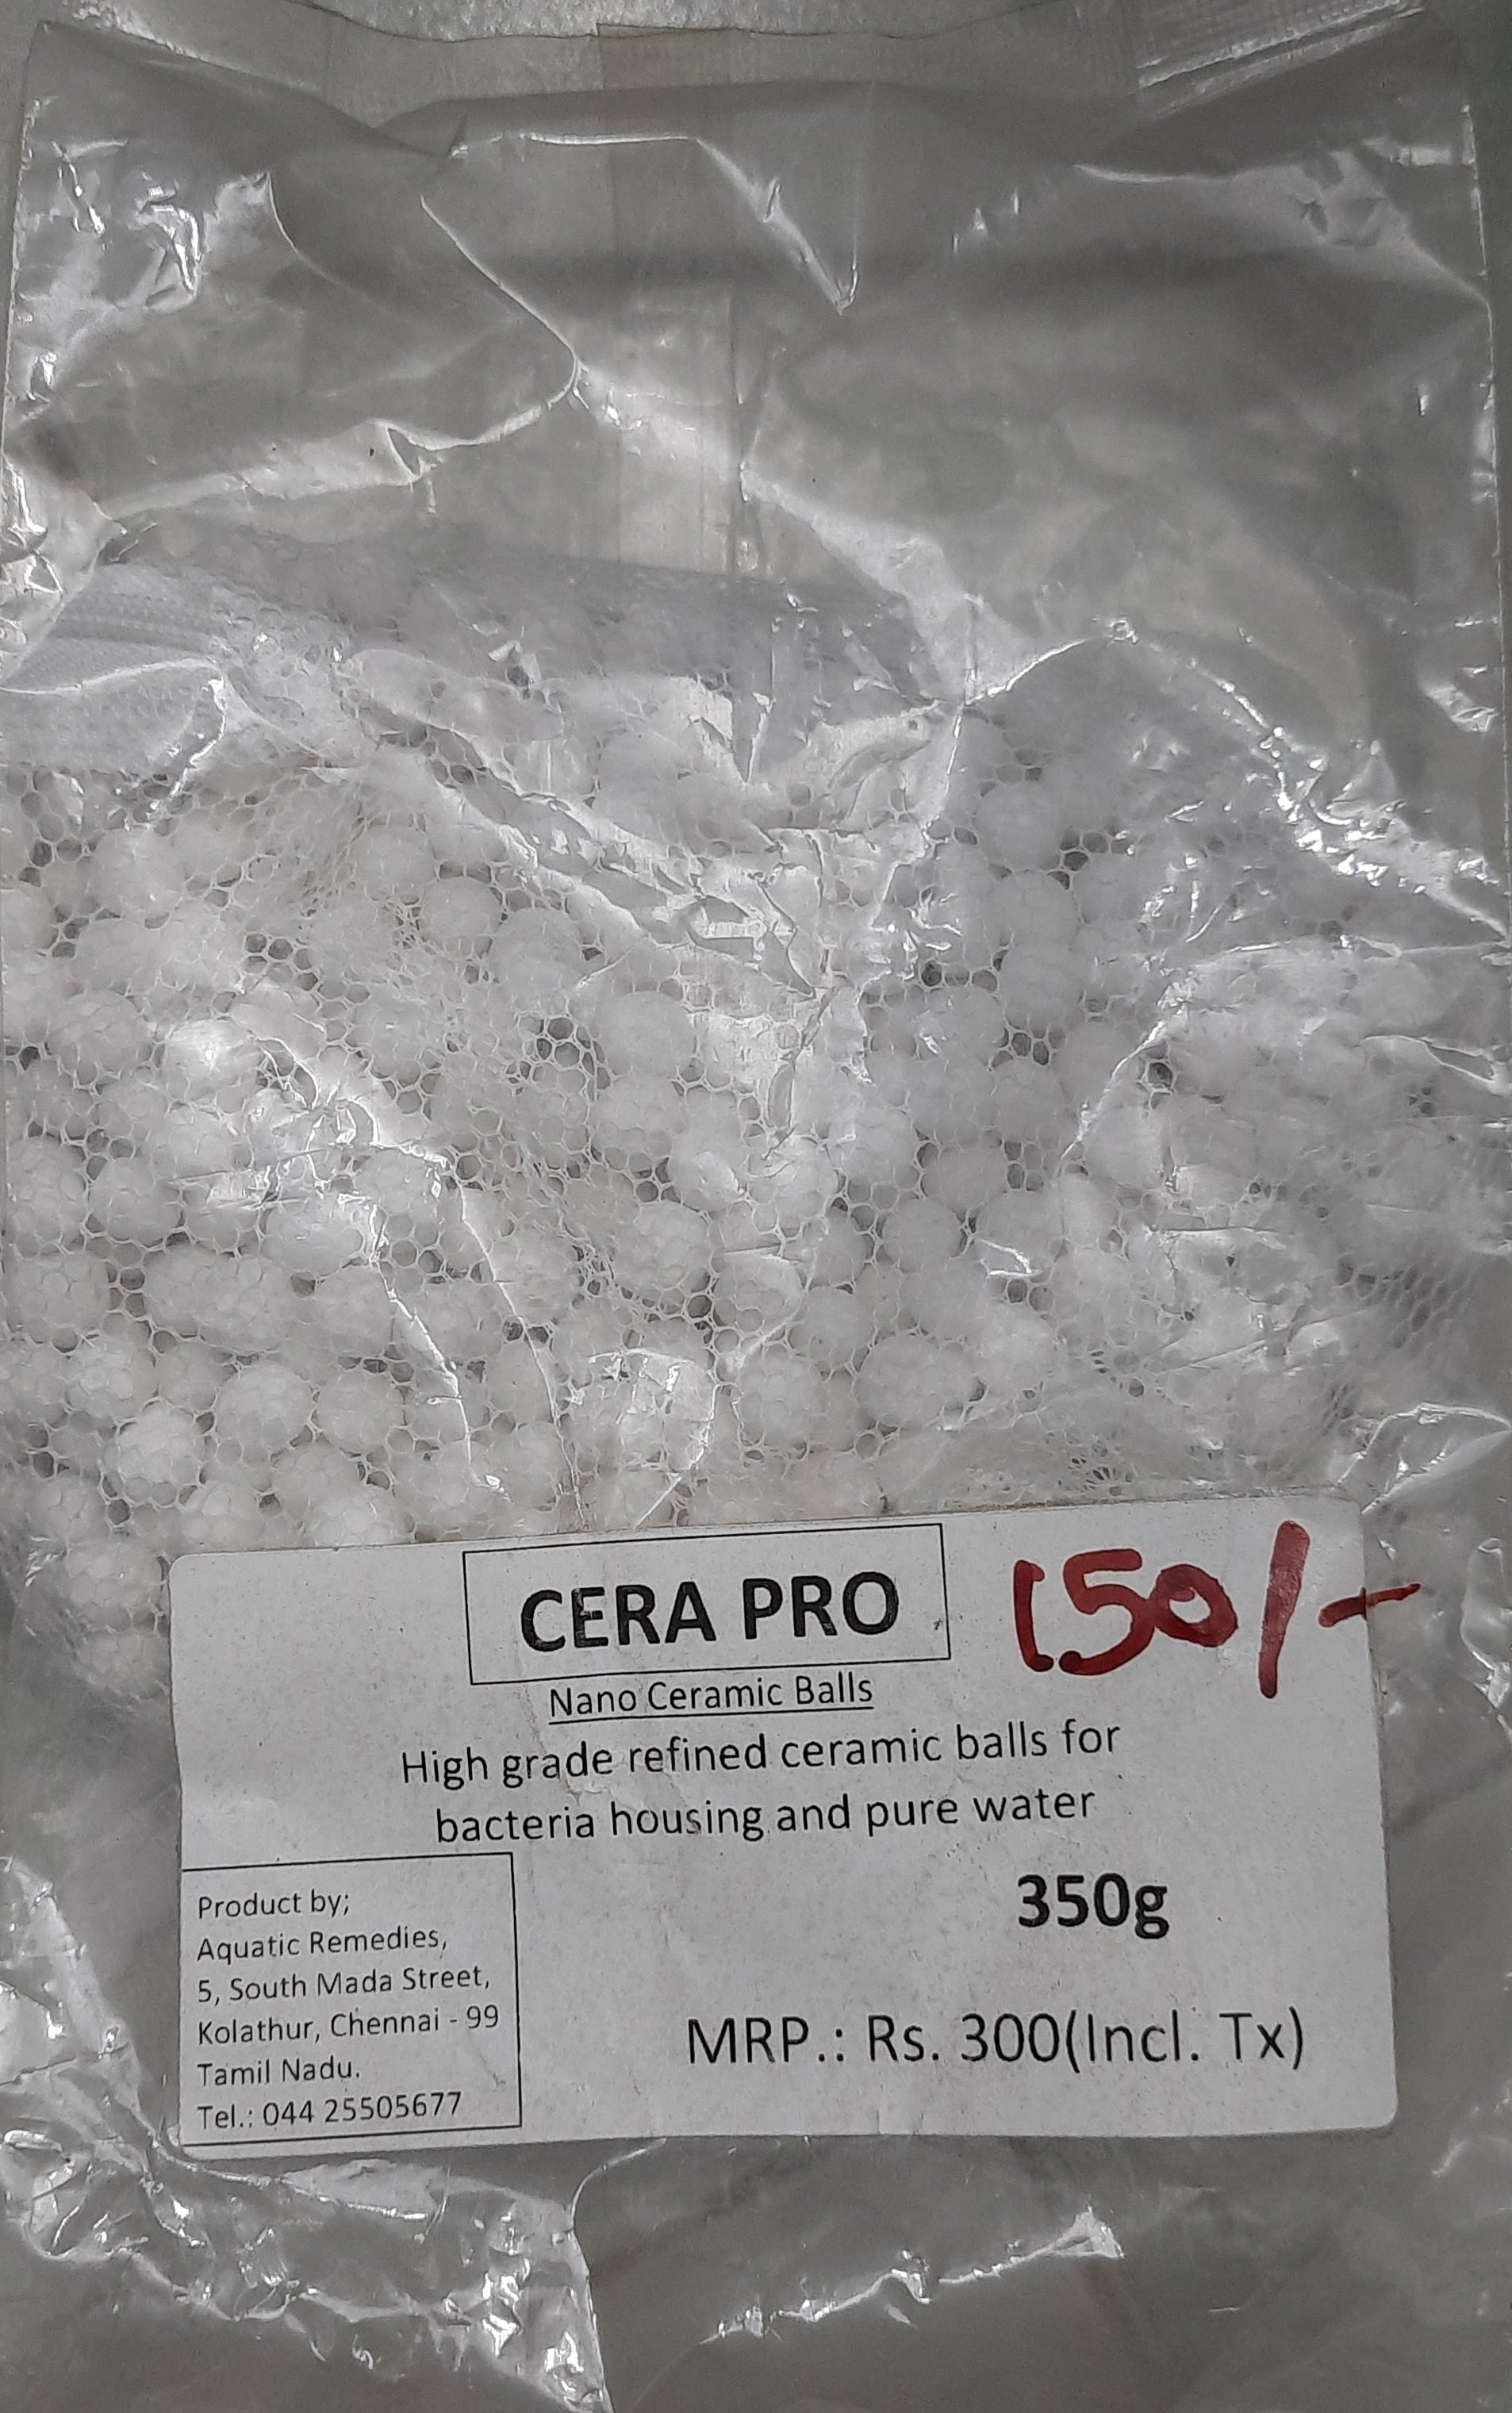 Cera Pro - Nano Ceramic Balls by Aquatic Remedies